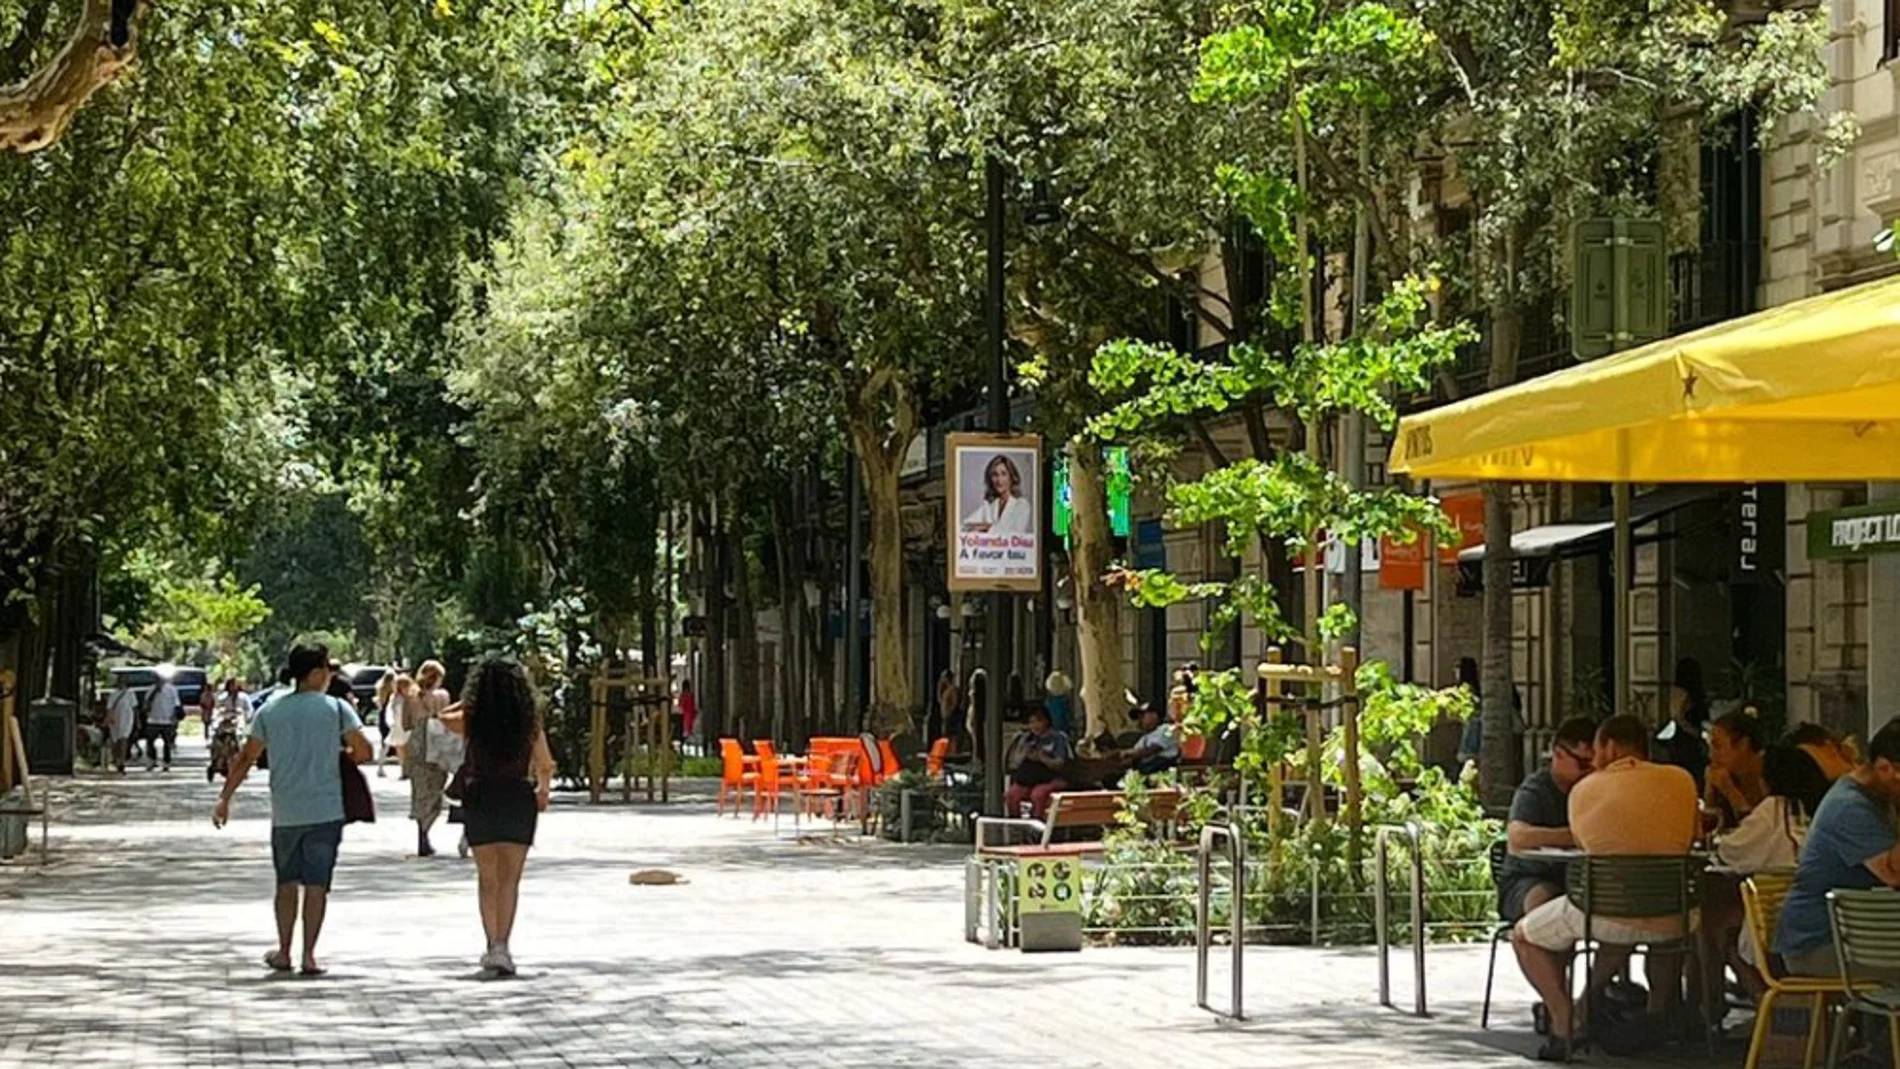 La supermanzana de Barcelona de Colau se cuela en el ranking de mejores calles del mundo